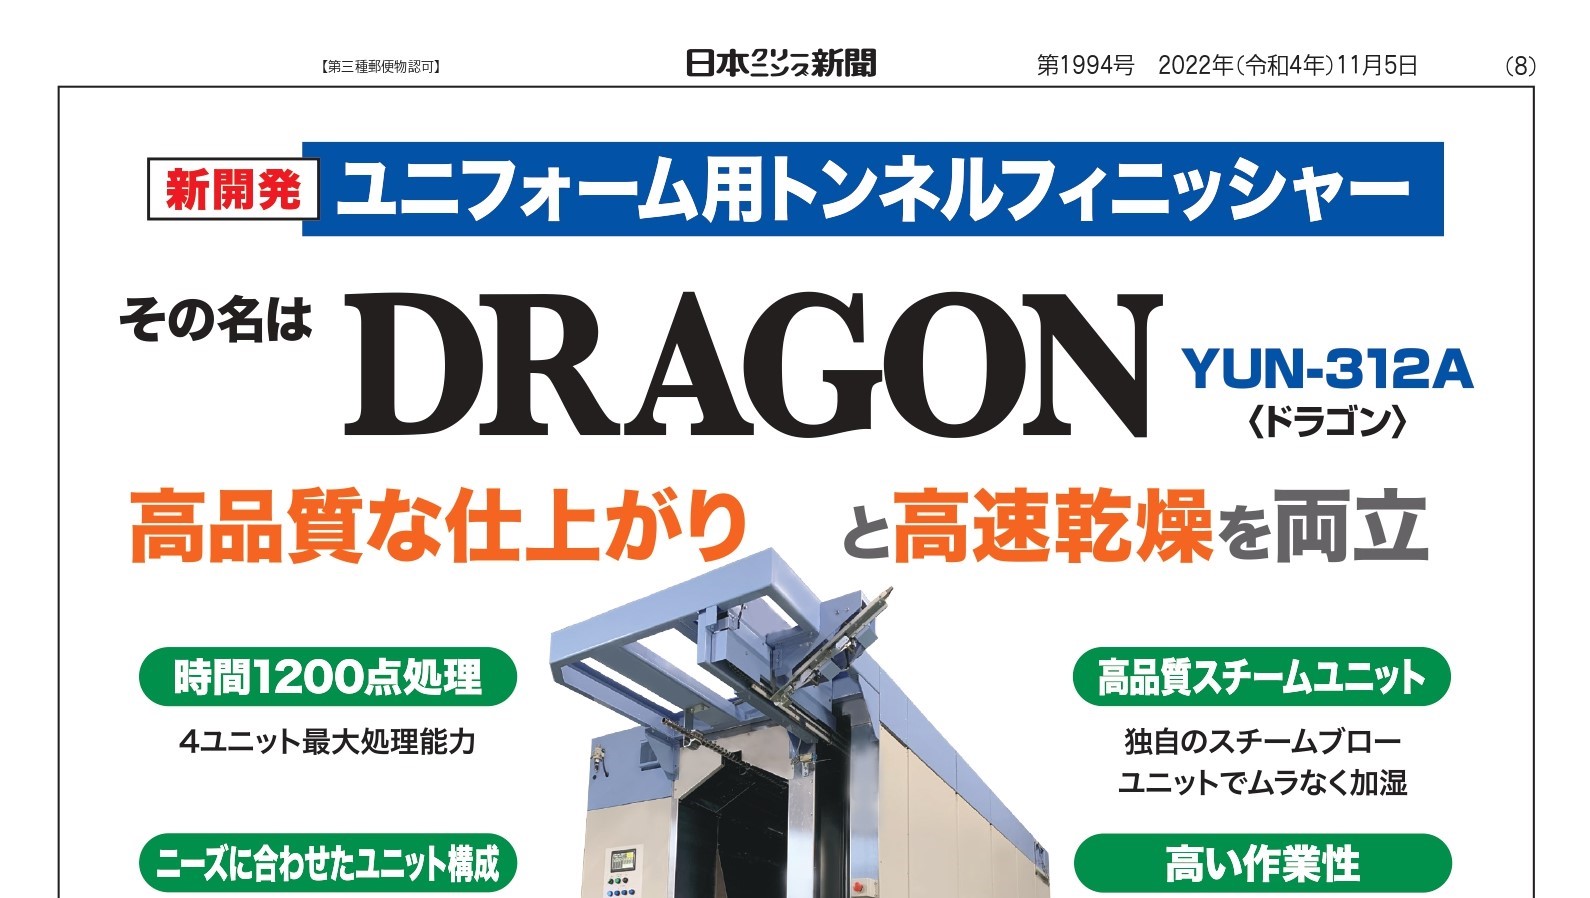 弊社商品が日本クリーニング新聞に掲載されました。